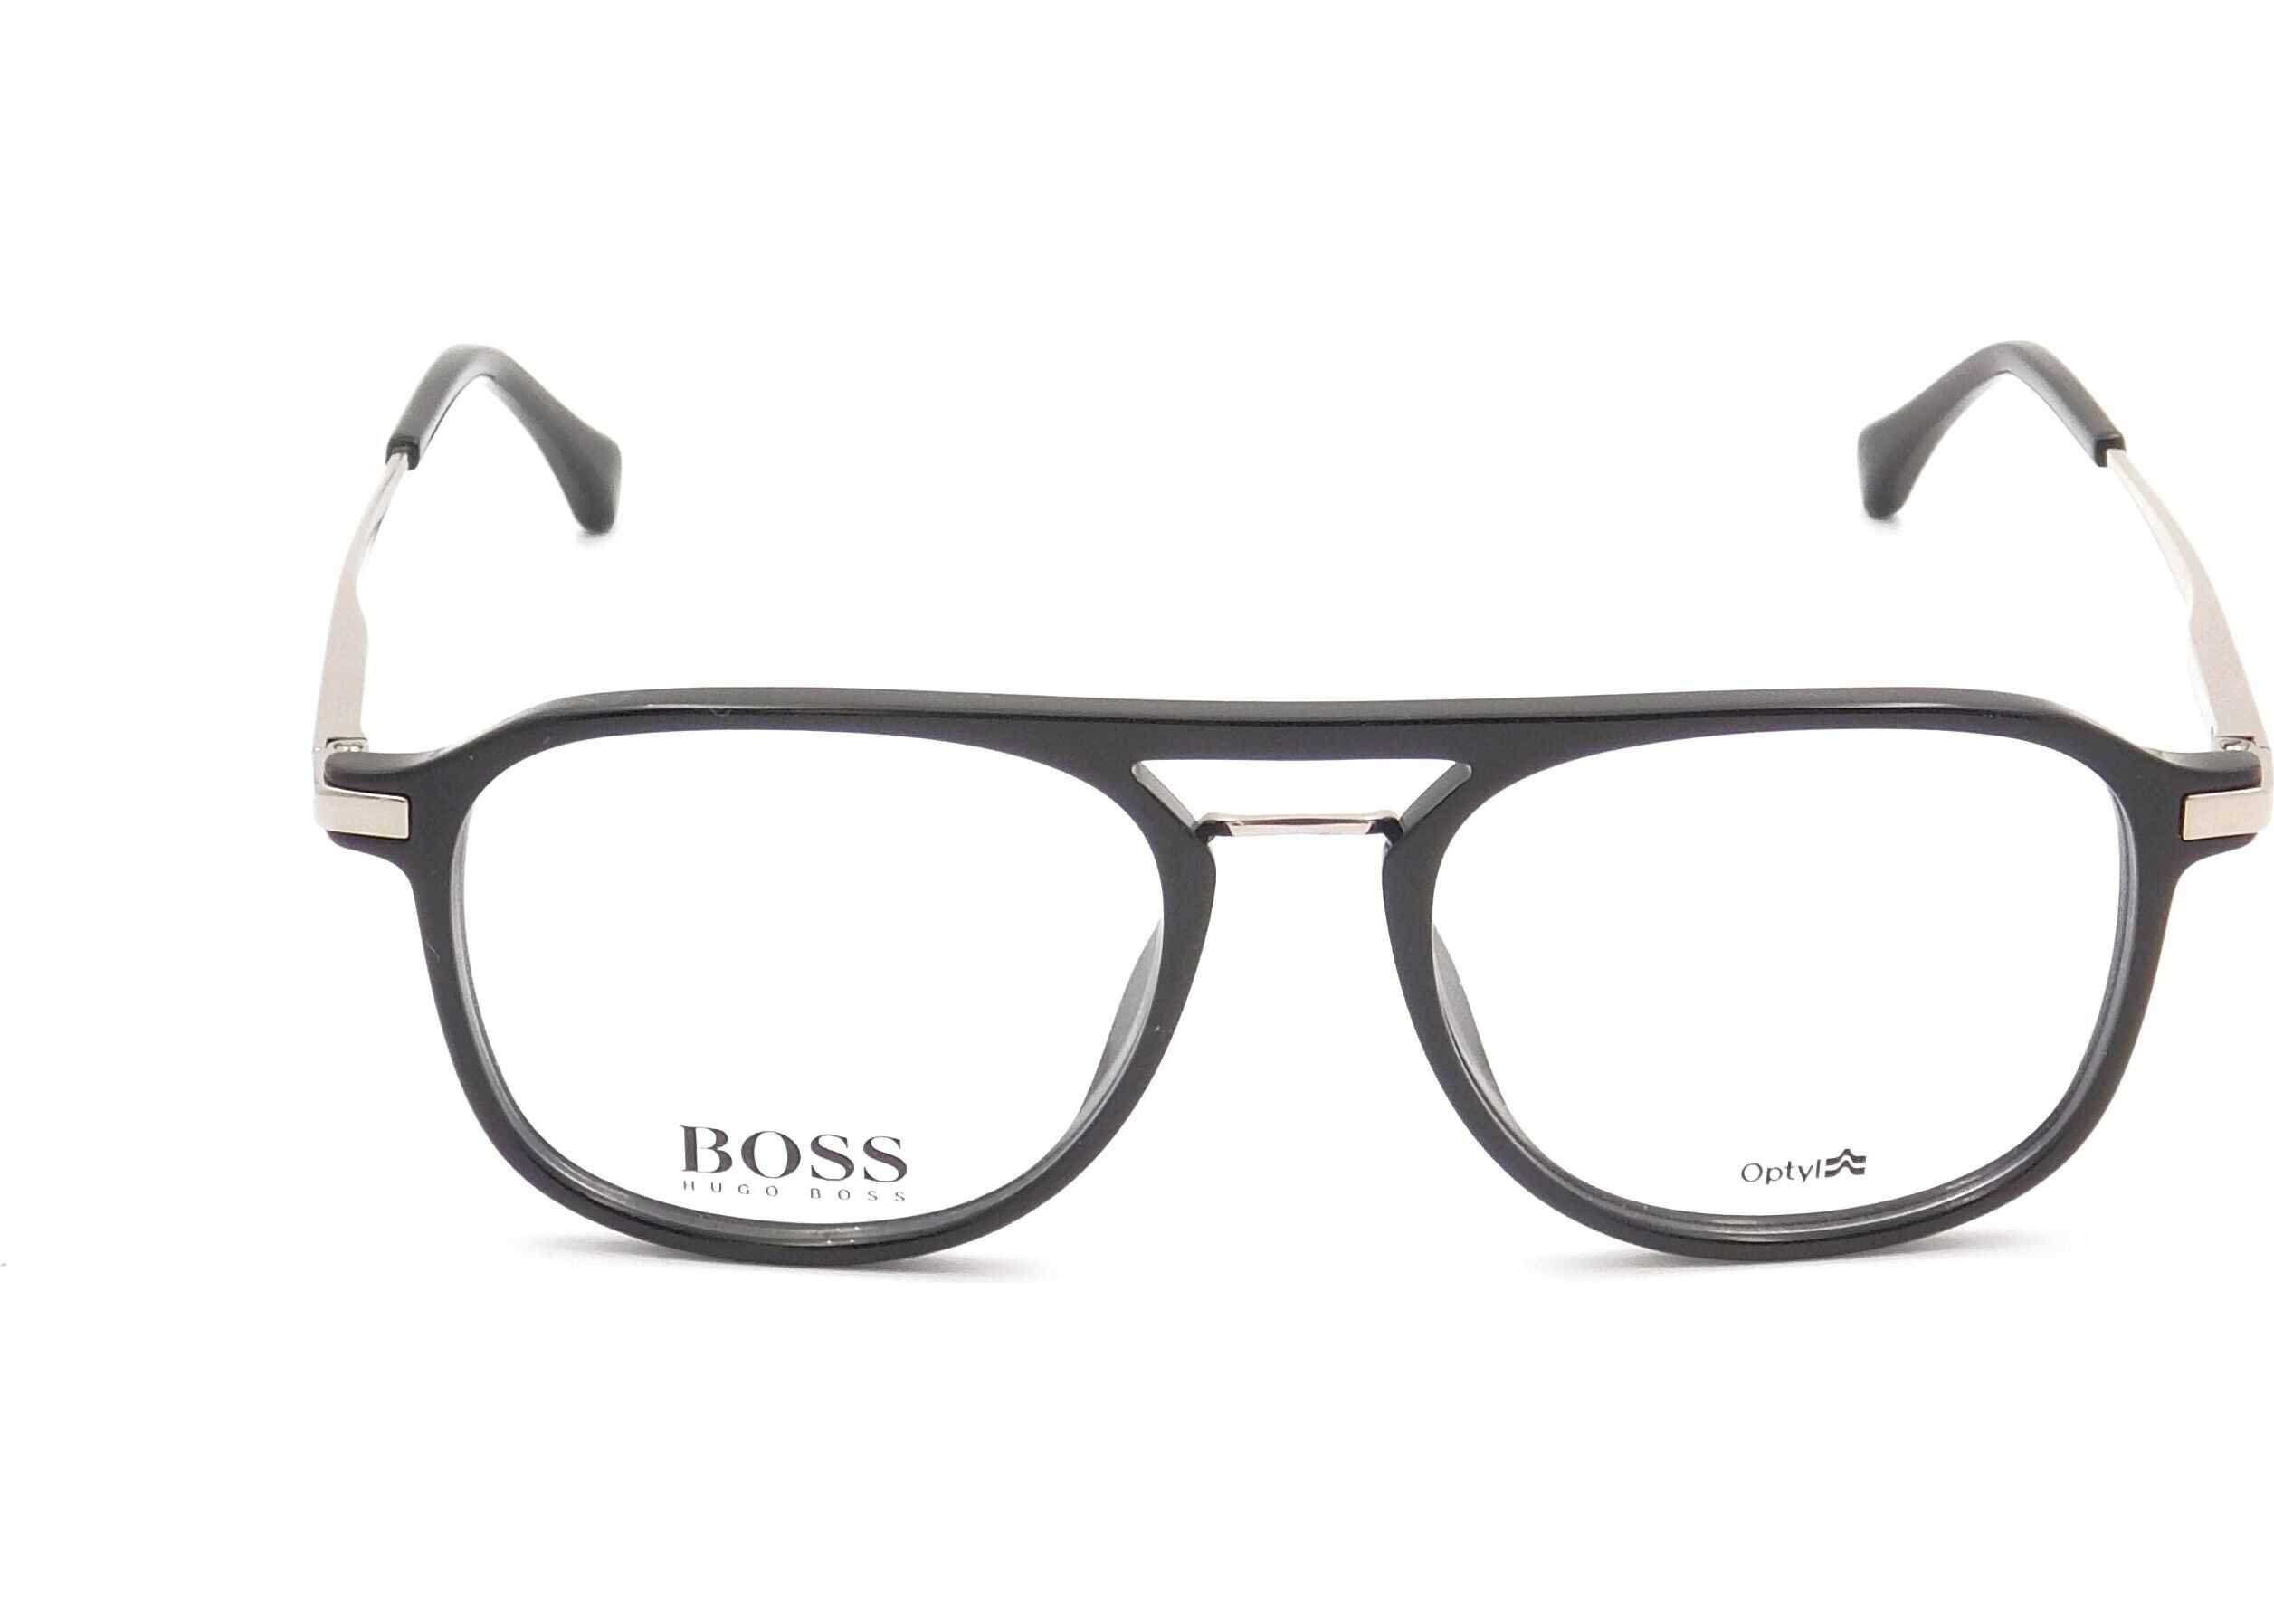 BOSS Hugo Boss Acetate Glasses BLACK